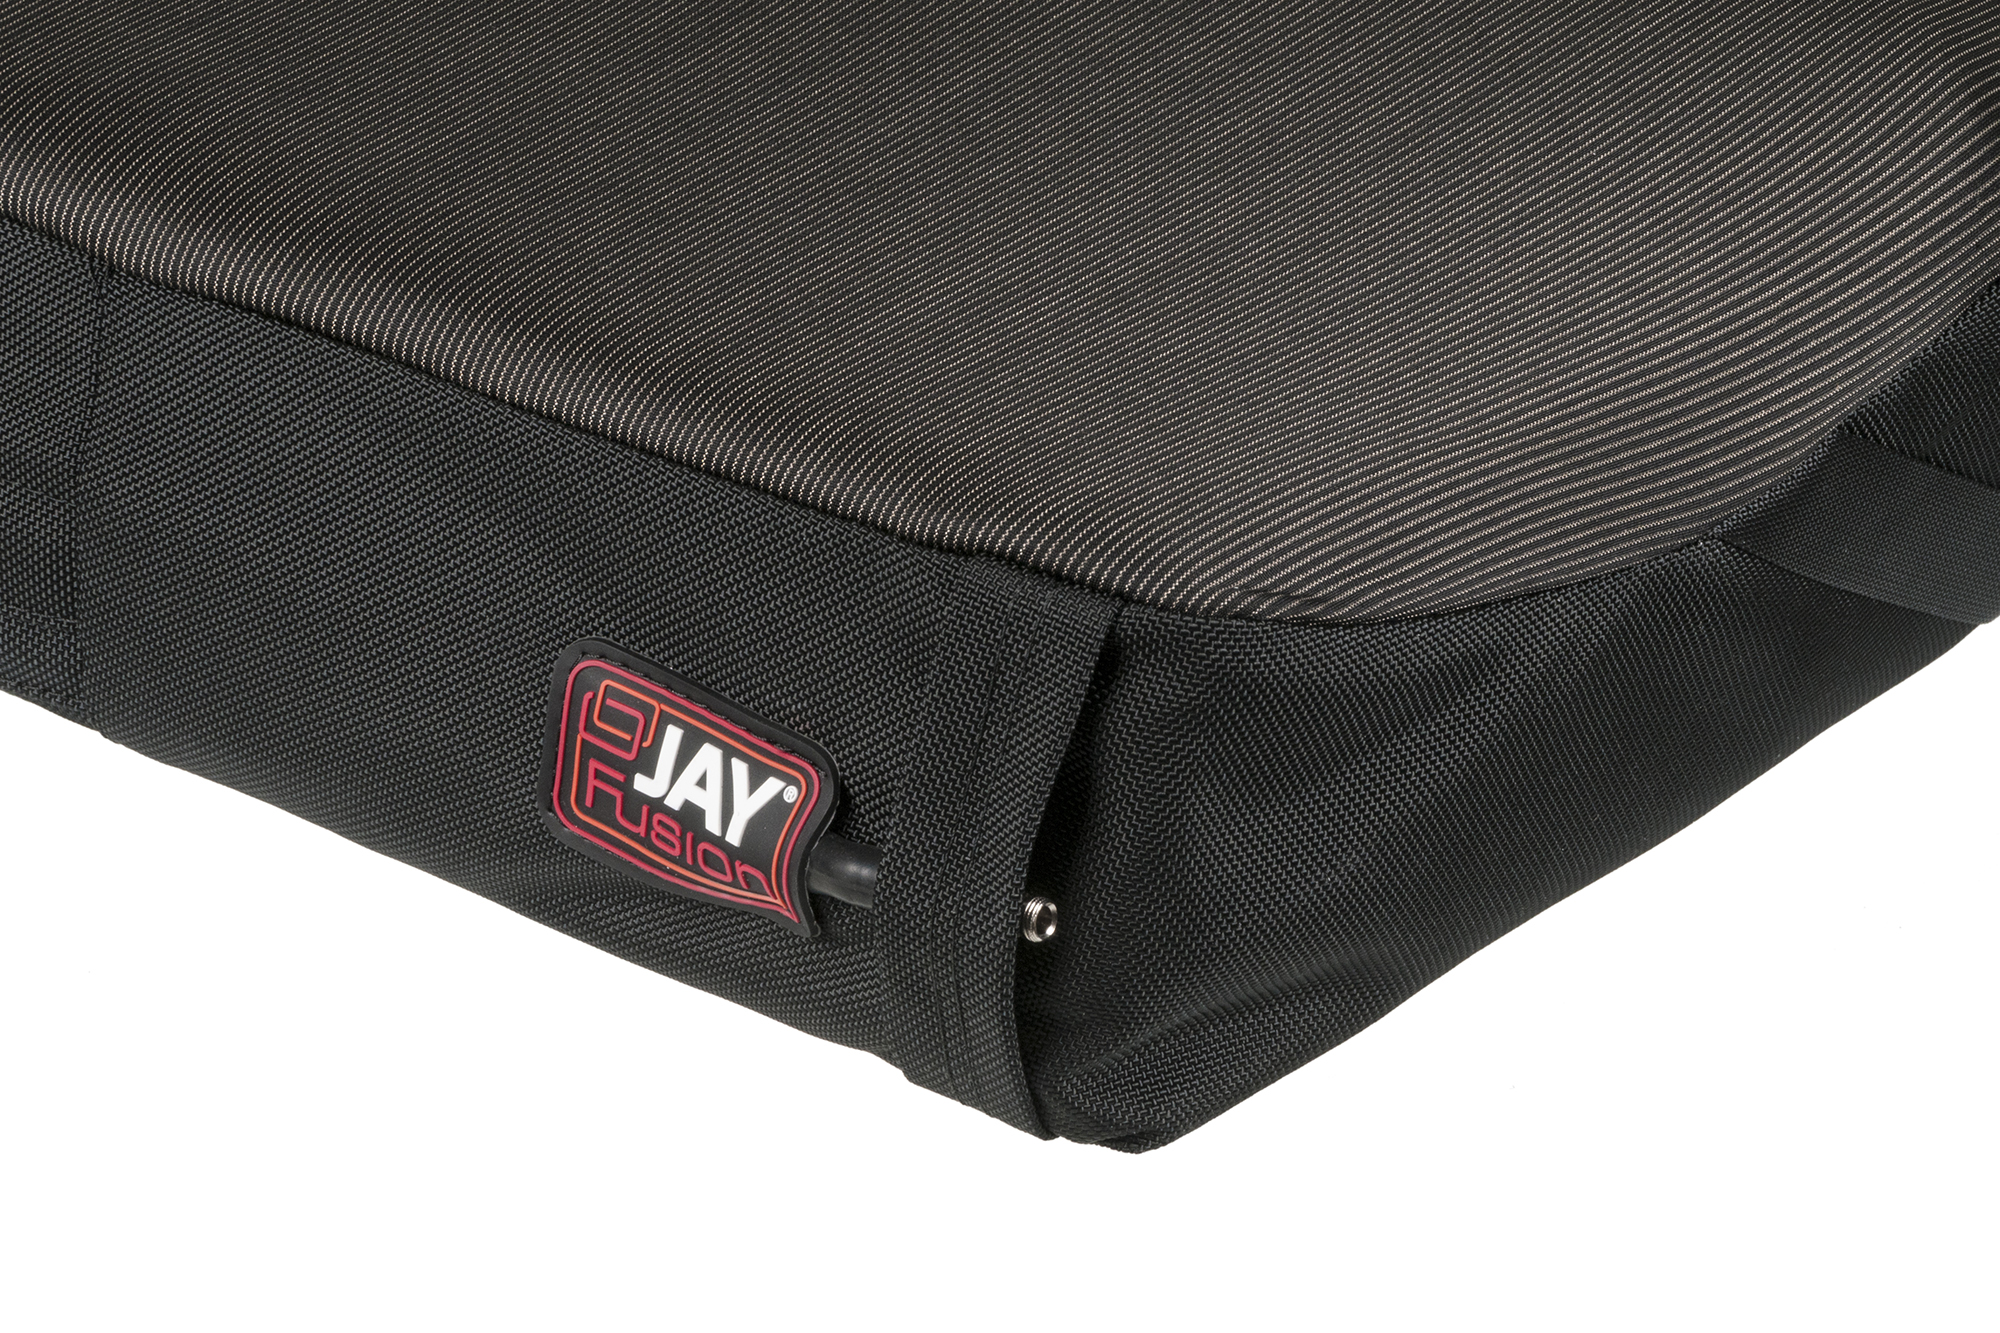 JAY Fusion Gel Wheelchair Cushion 17.5”x 18” Foam Gel Insert Skin  Protection New